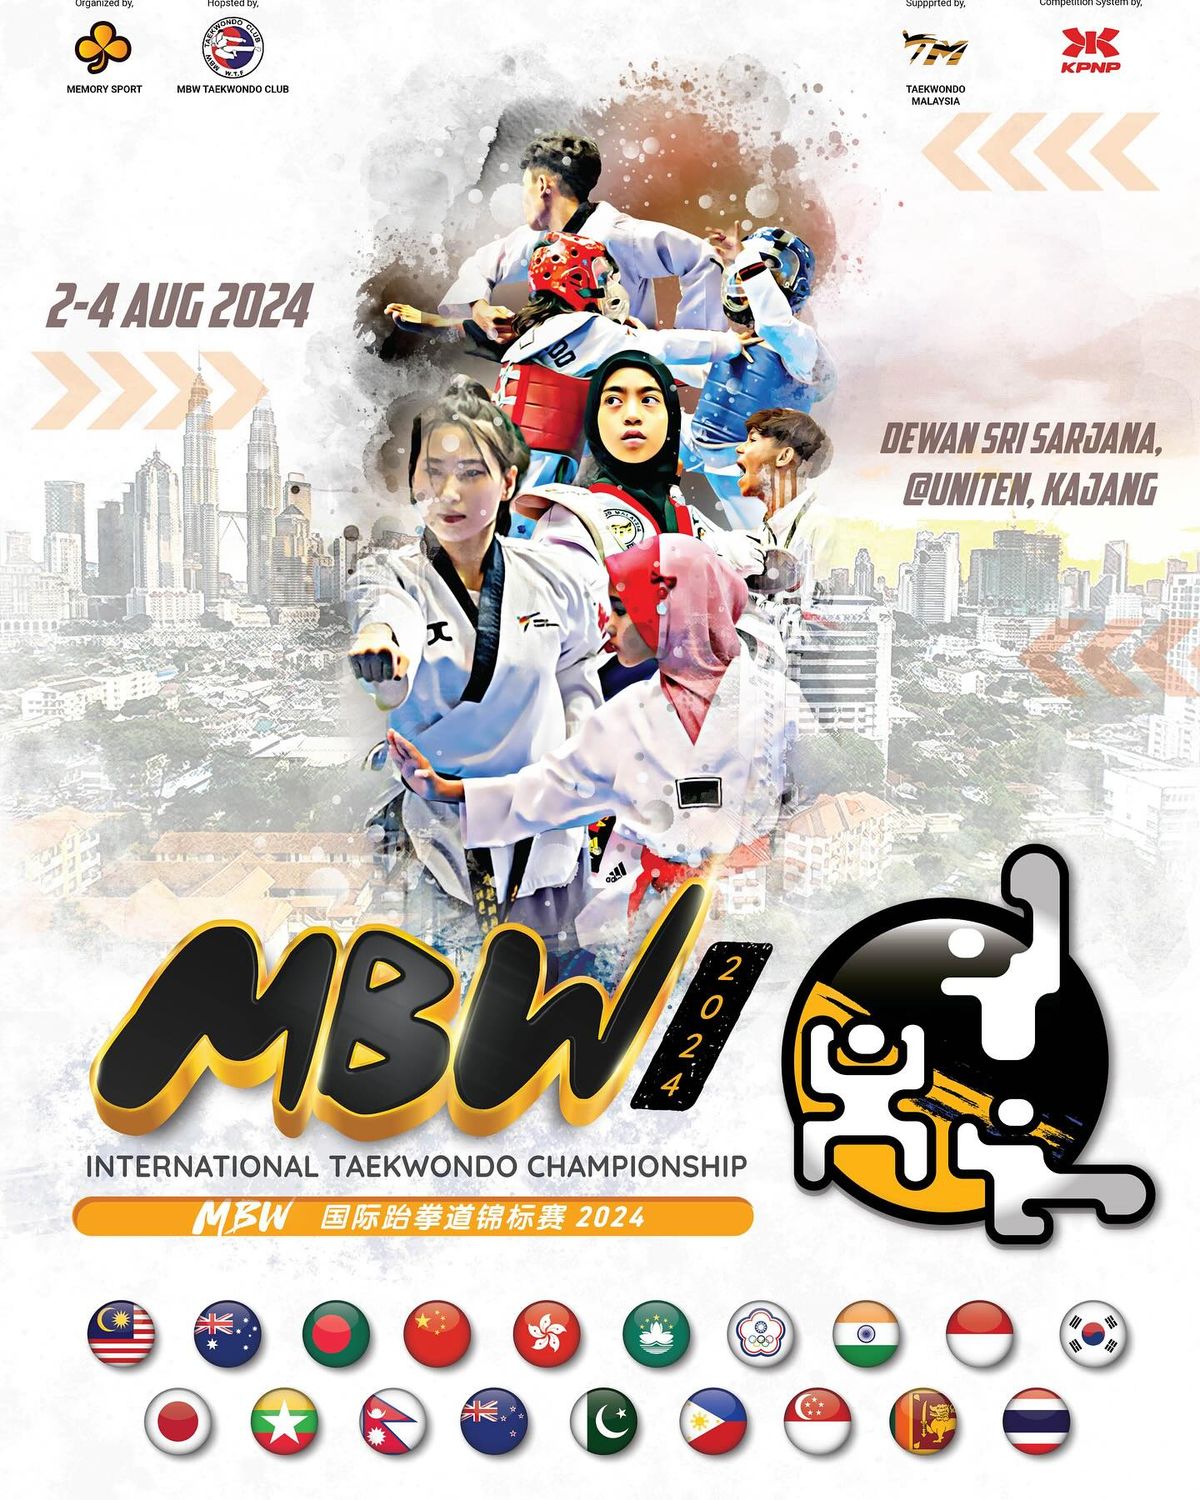 MBW International Taekwondo Championship 2024